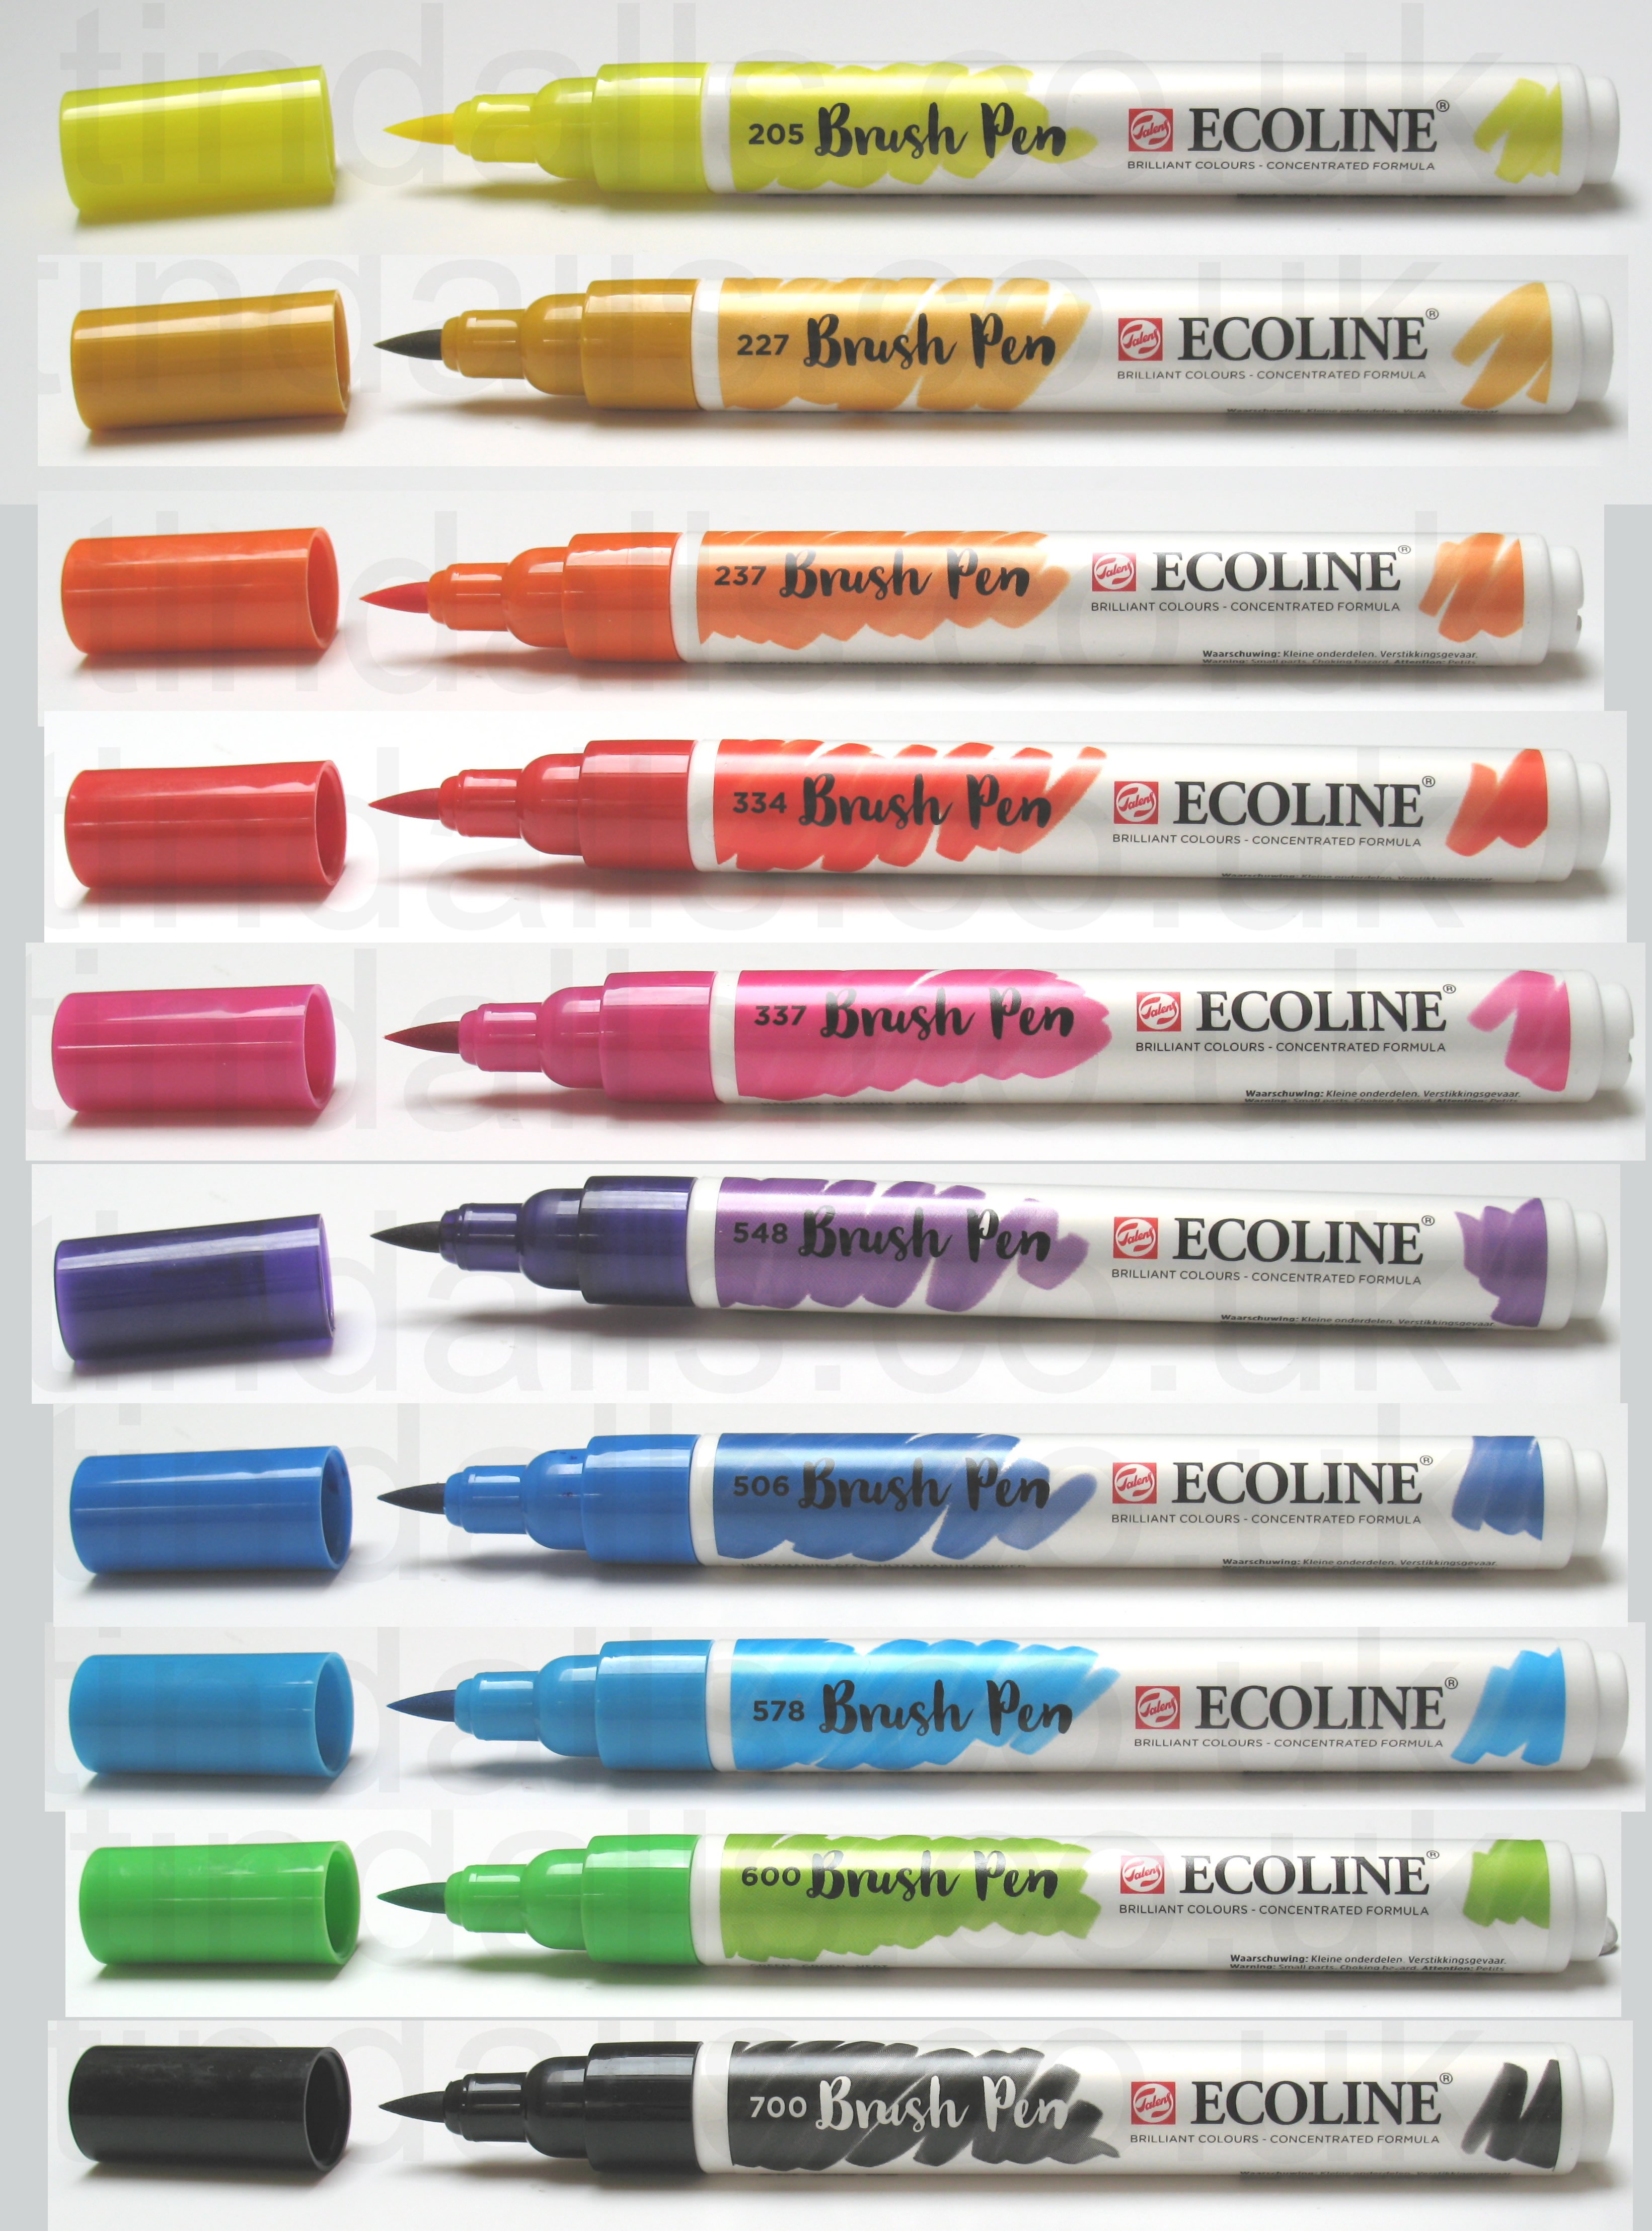 Ecoline Brush Pen Color Chart